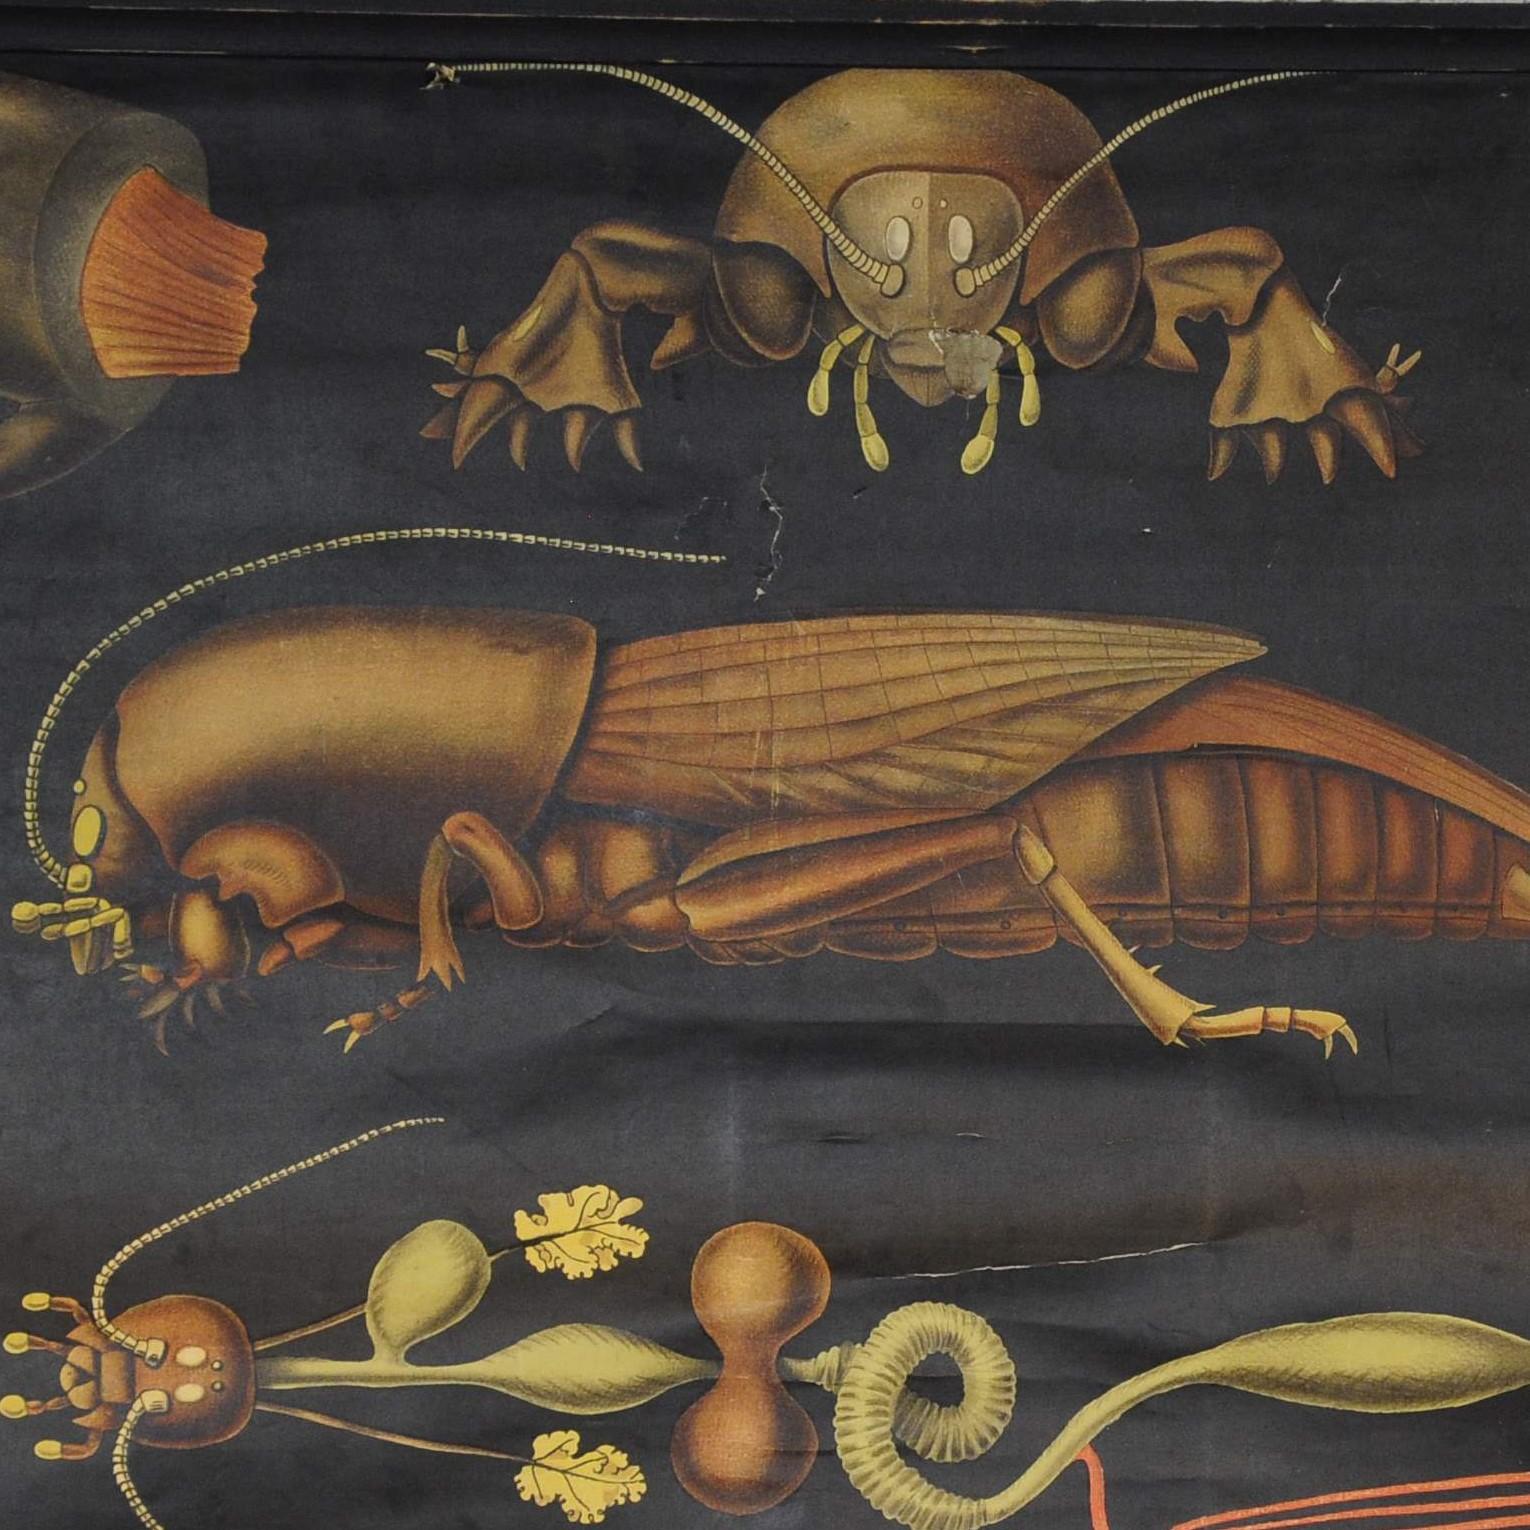 Eine antike Wandtafel von Jung Koch Quentell, die den Lebenszyklus der Europäischen Maulwurfsgrille (gryllotalpa gryllotalpa) zeigt. Herausgegeben von Fromann & Morian. Farbenfroher Druck auf mit Leinwand verstärktem Papier. Verwendet als MATERIAL